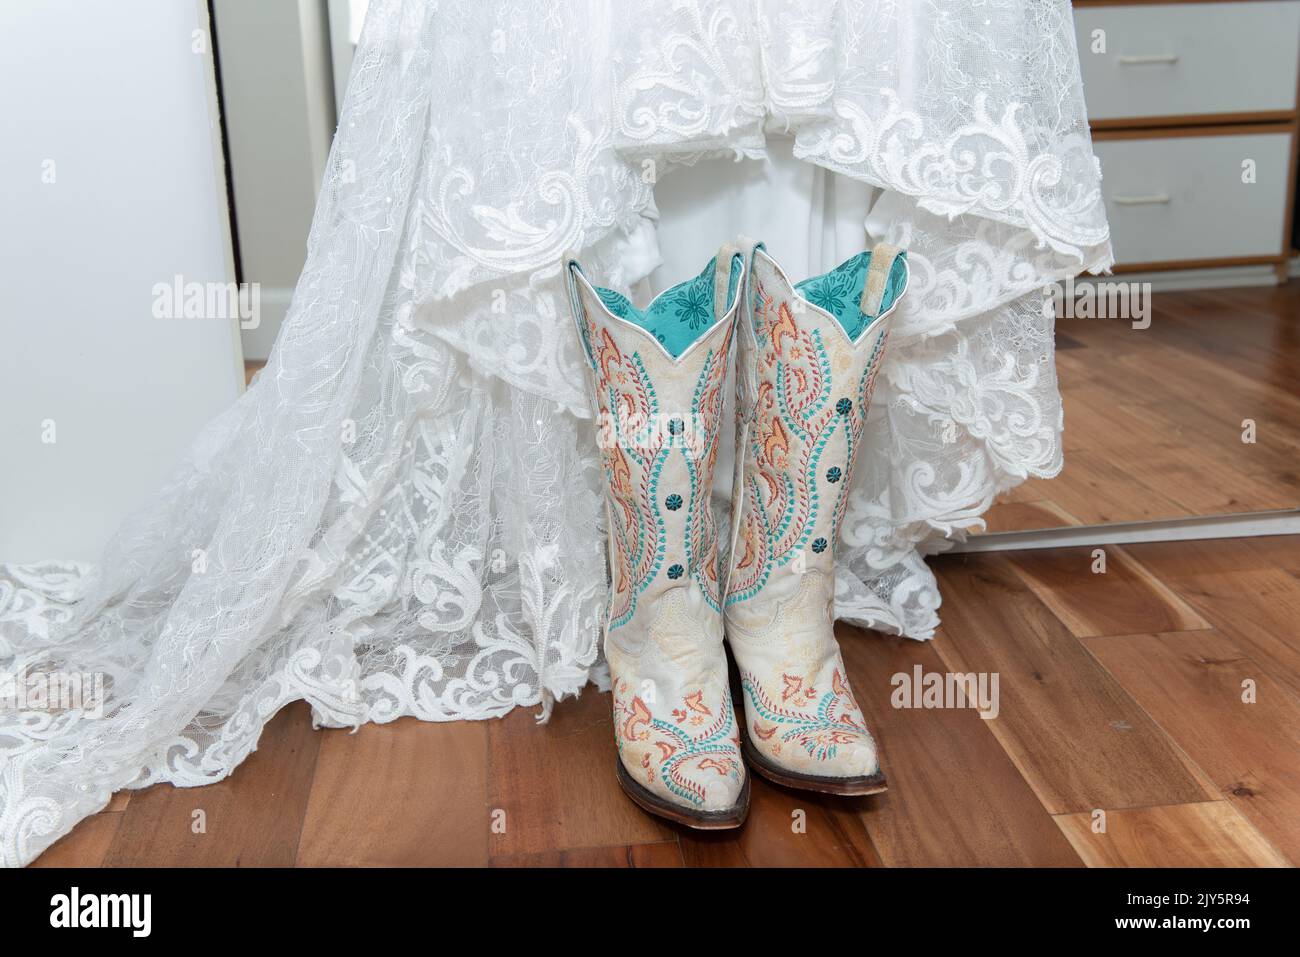 L'abito in pizzo bianco della sposa è abbinato a stivali da cowgirl ricamati bianchi per una cerimonia di nozze occidentale. Foto Stock